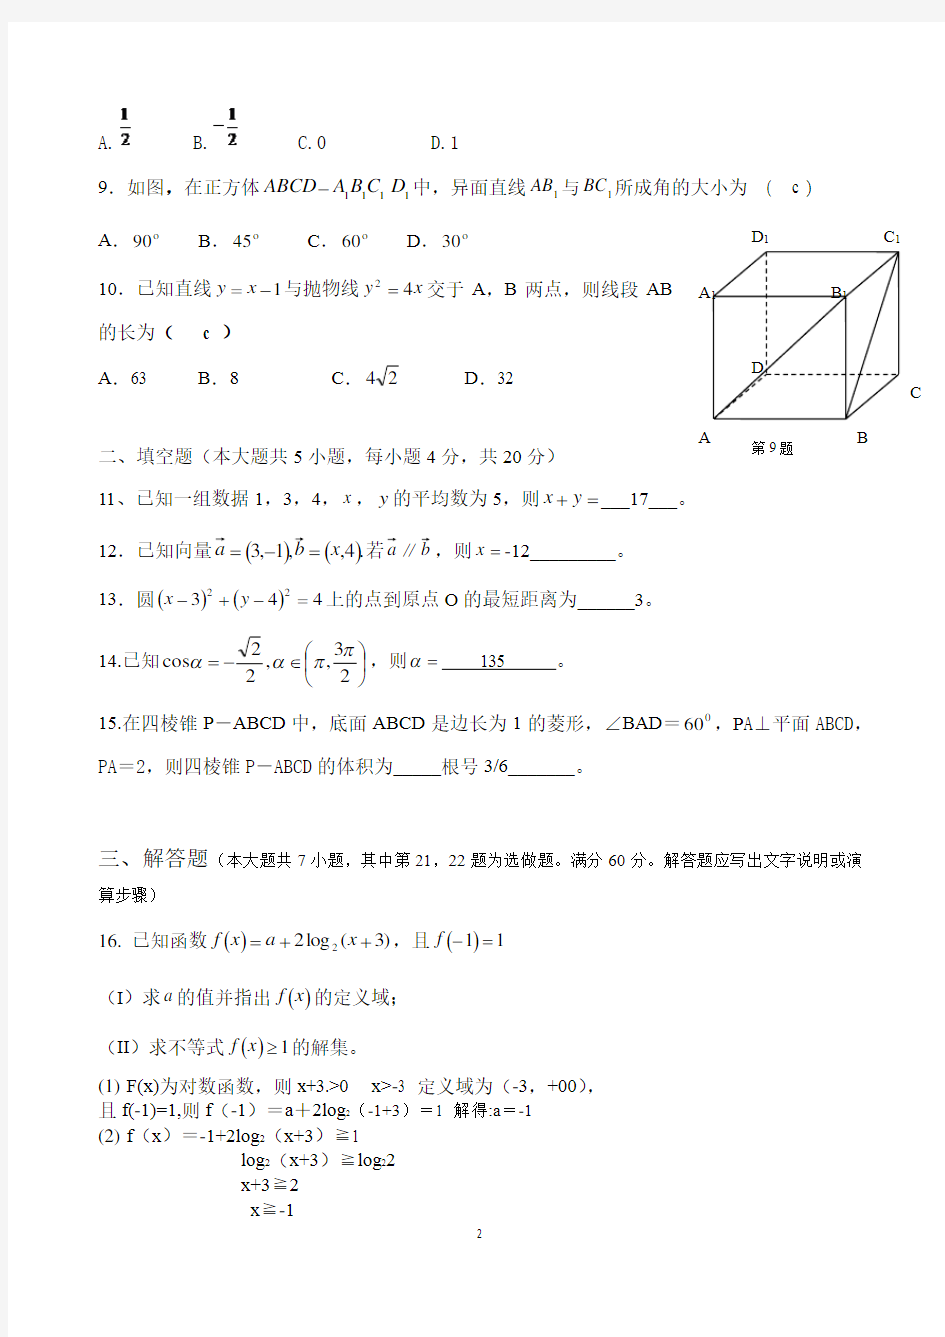 湖南省2014年高考对口招生考试数学真题